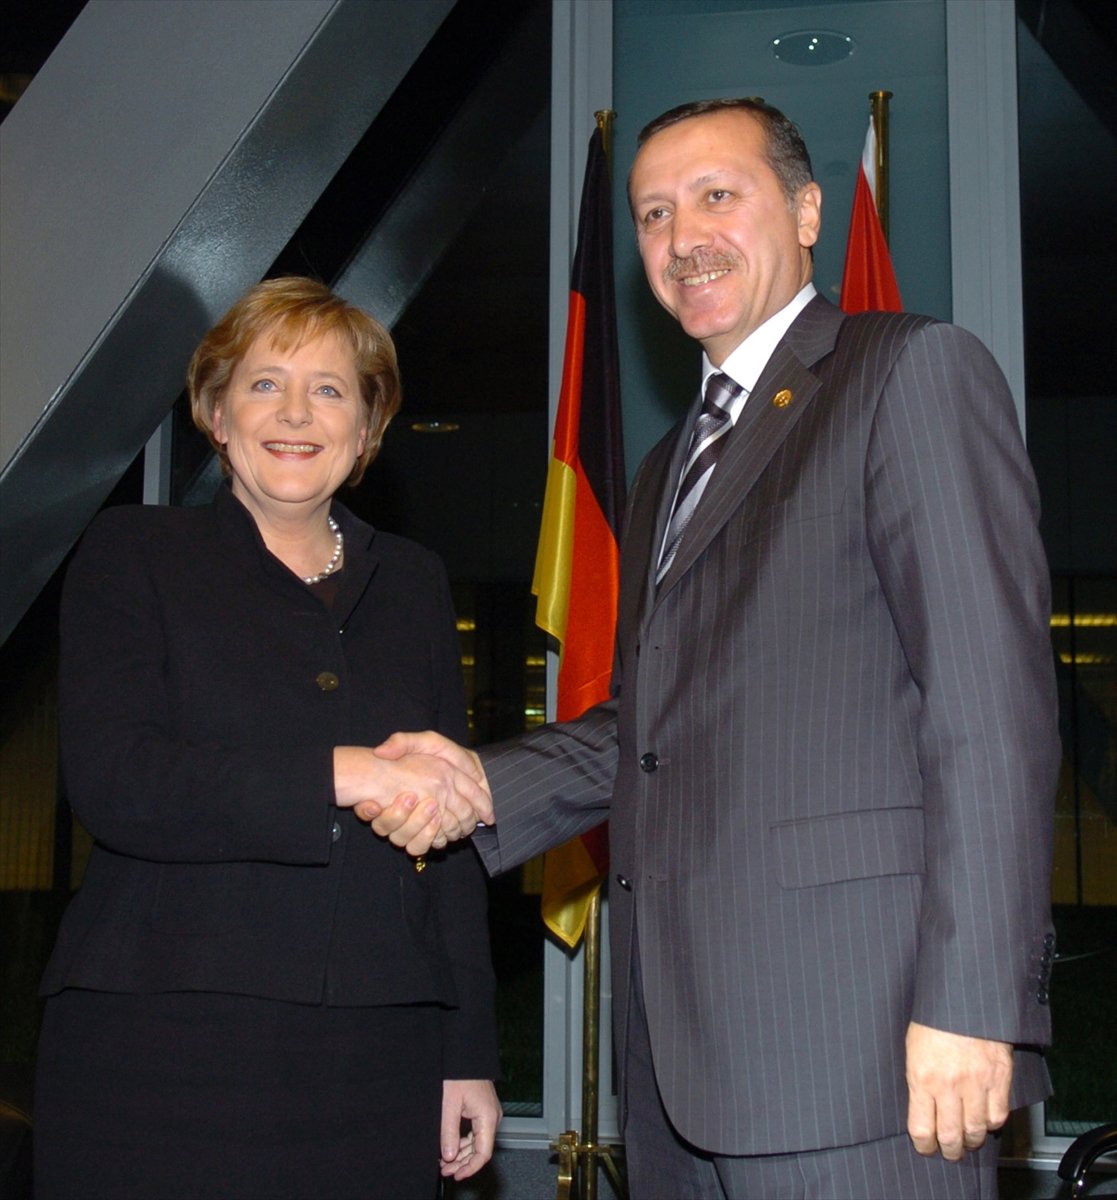 Merkel li Almanya nın Türkiye ile ilişkilerinde 16 yıl #2